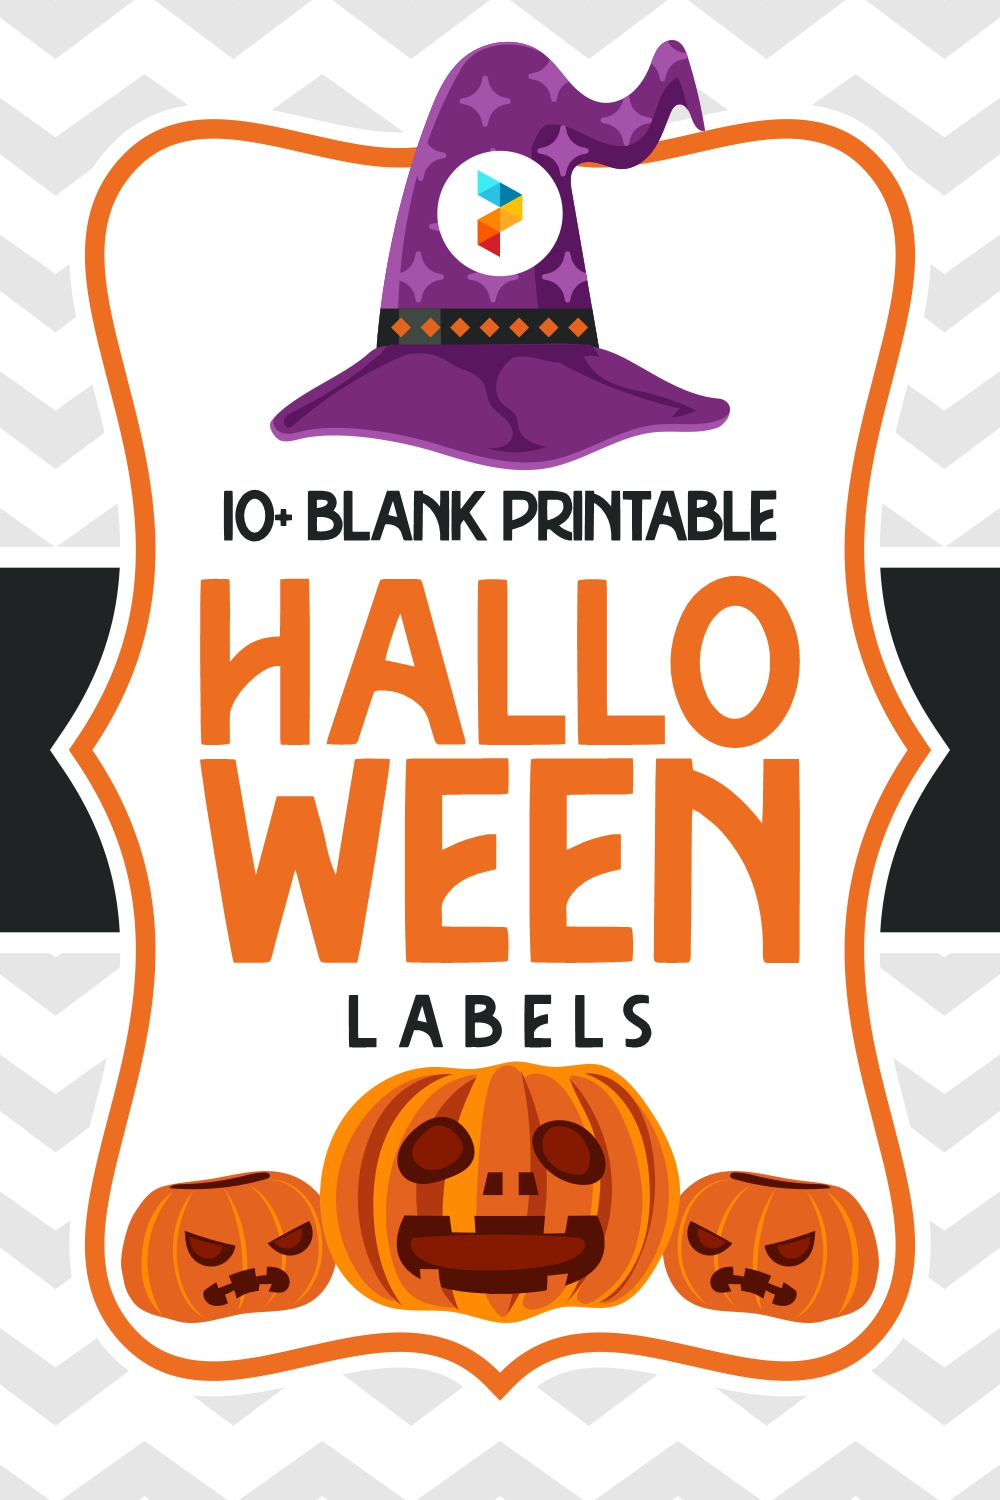 Blank Printable Halloween Labels